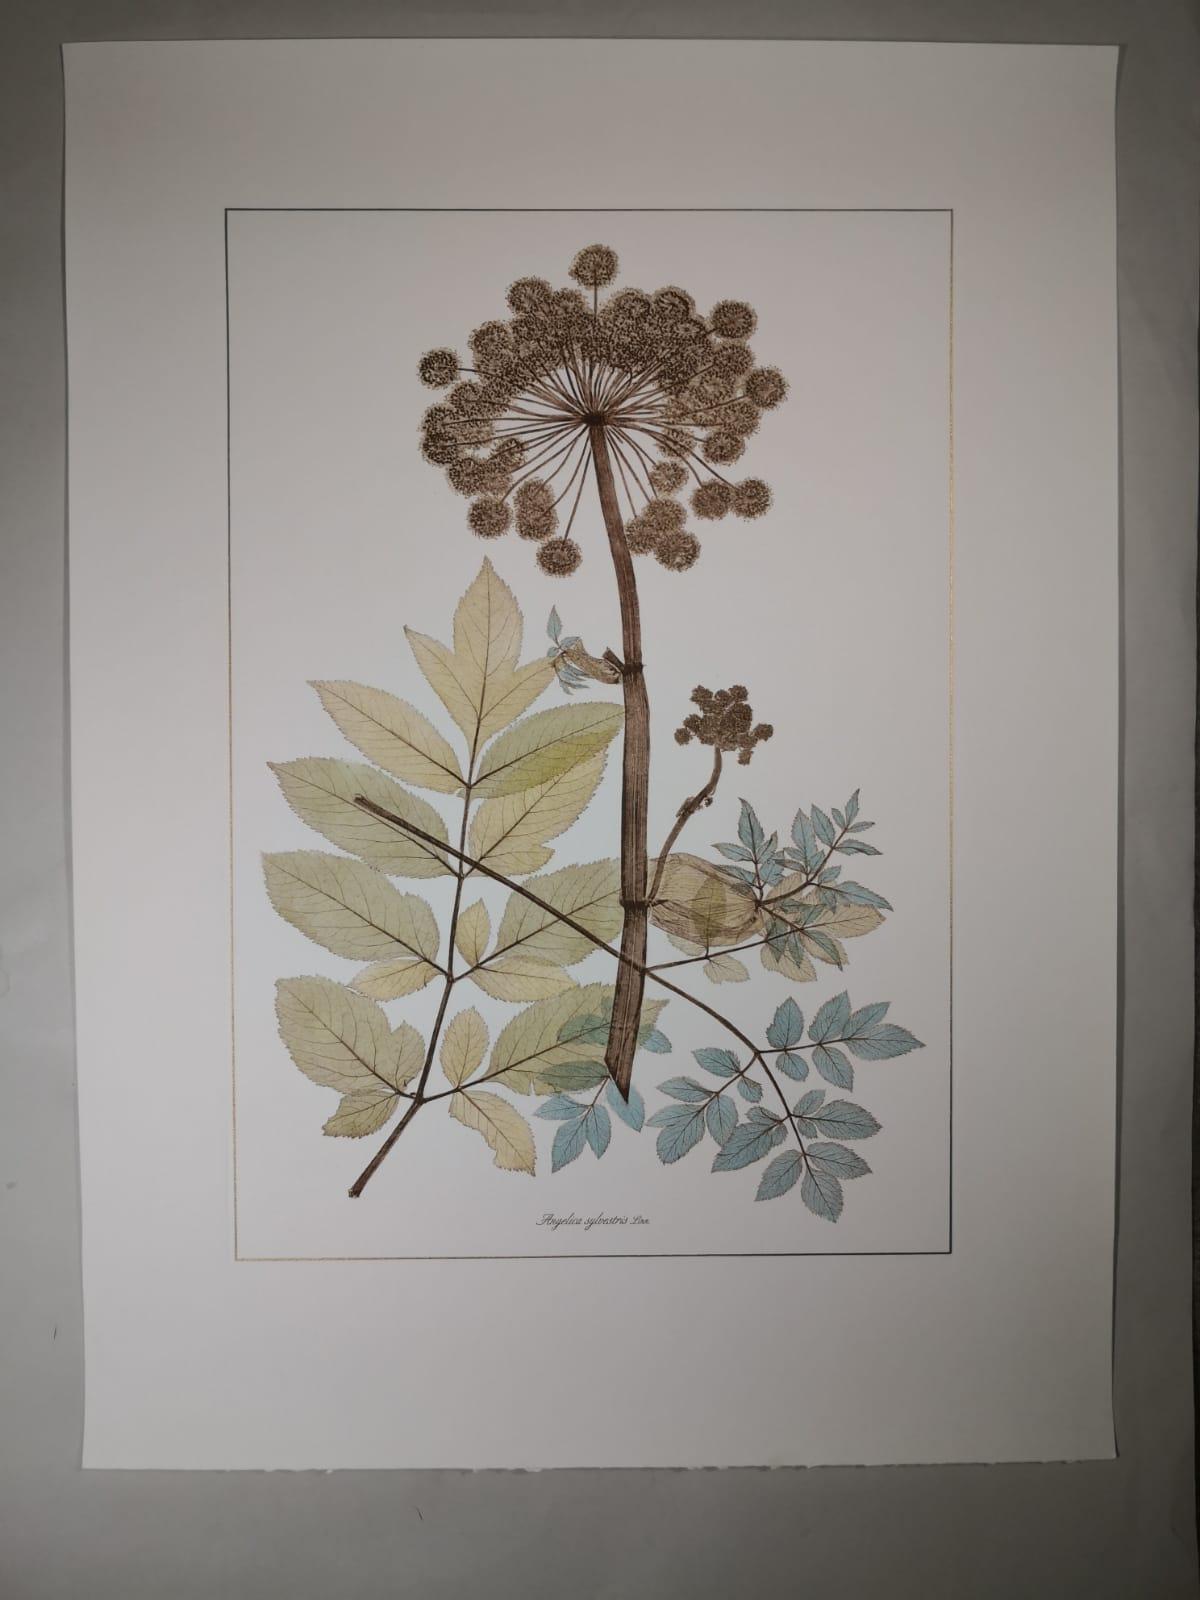 Eleganter, handaquarellierter Druck, der die blühende und wilde Pflanze Angelica Sylvestris darstellt. 

Dieser Druck im botanischen Stil ist in 4 verschiedenen natürlichen Darstellungen erhältlich, um eine helle und fröhliche Komposition zu